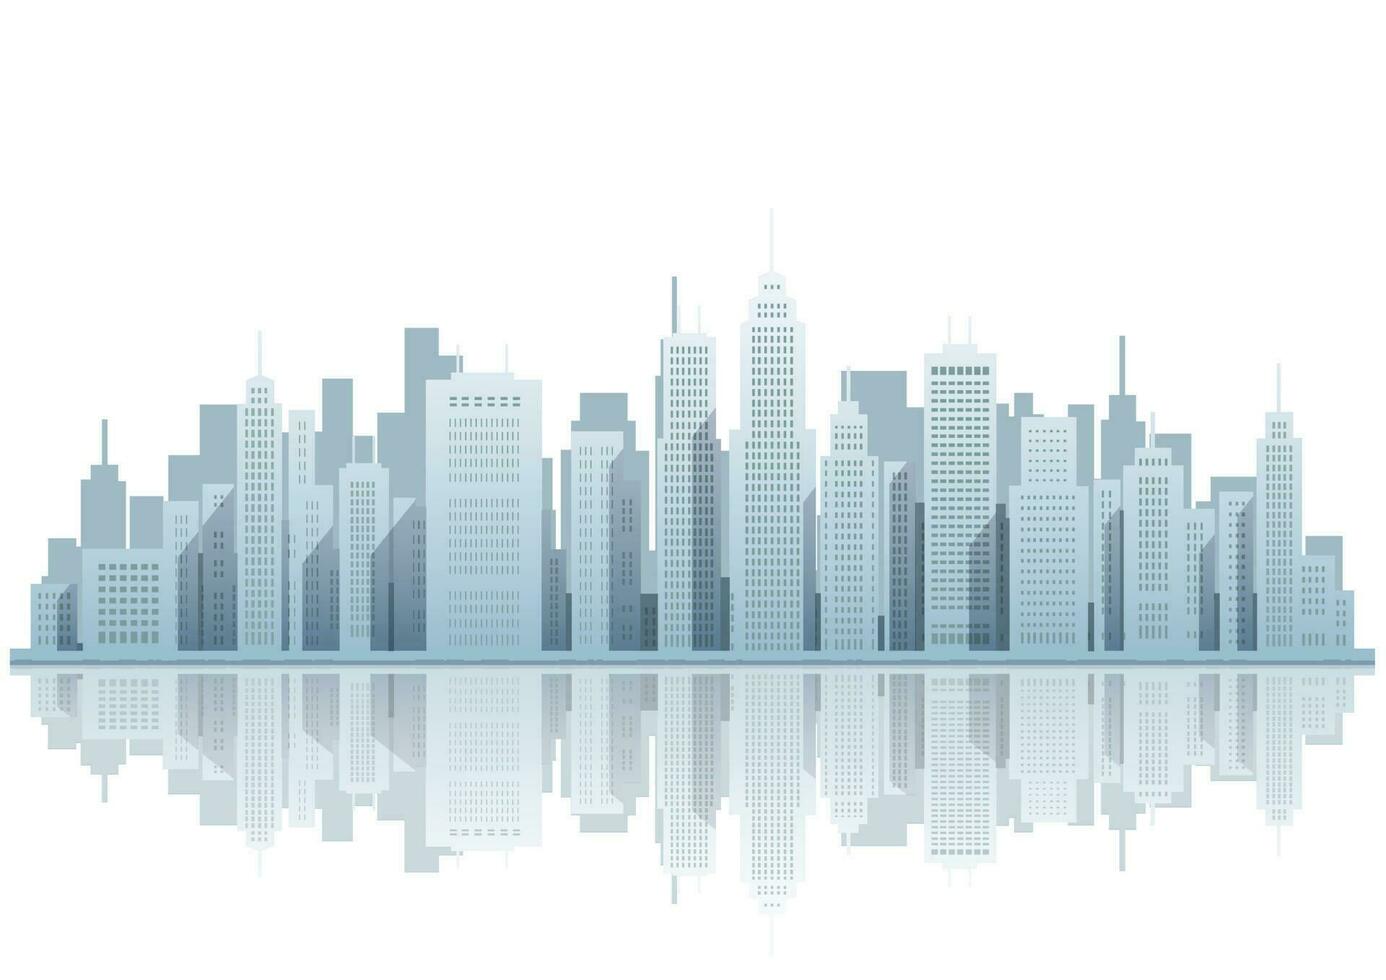 Stadtbild Vektor Illustration mit Wolkenkratzer beim das am Wasser.